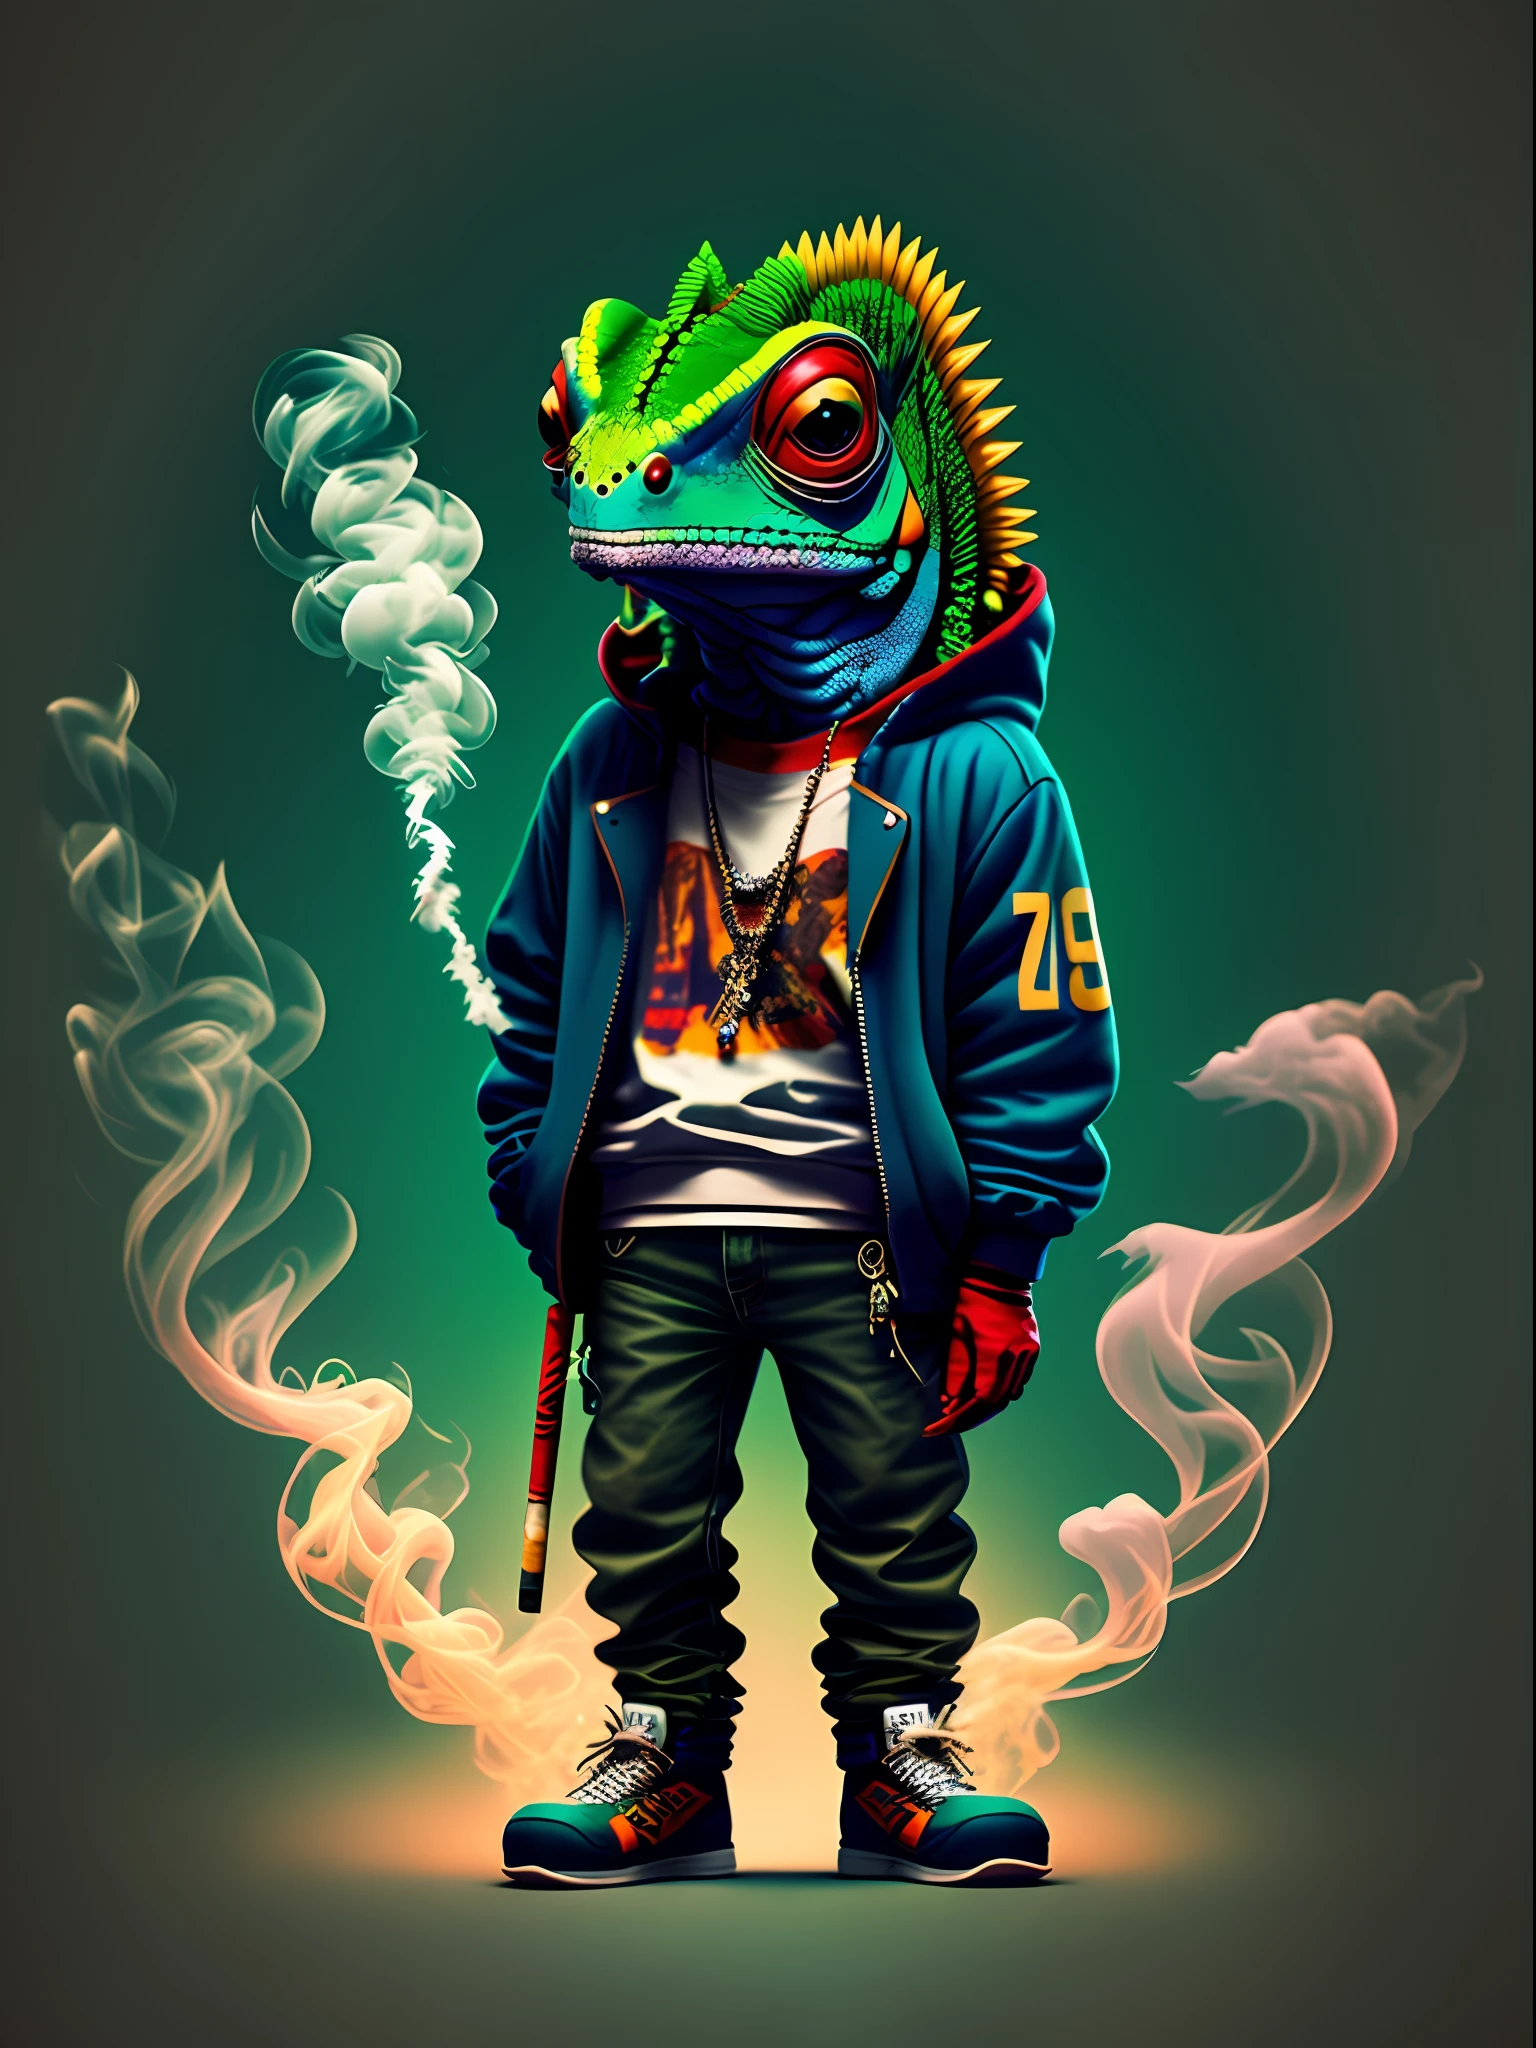 變色龍站著抽煙的圖片, 穿著嘻哈風格的衣服, 90年代风格